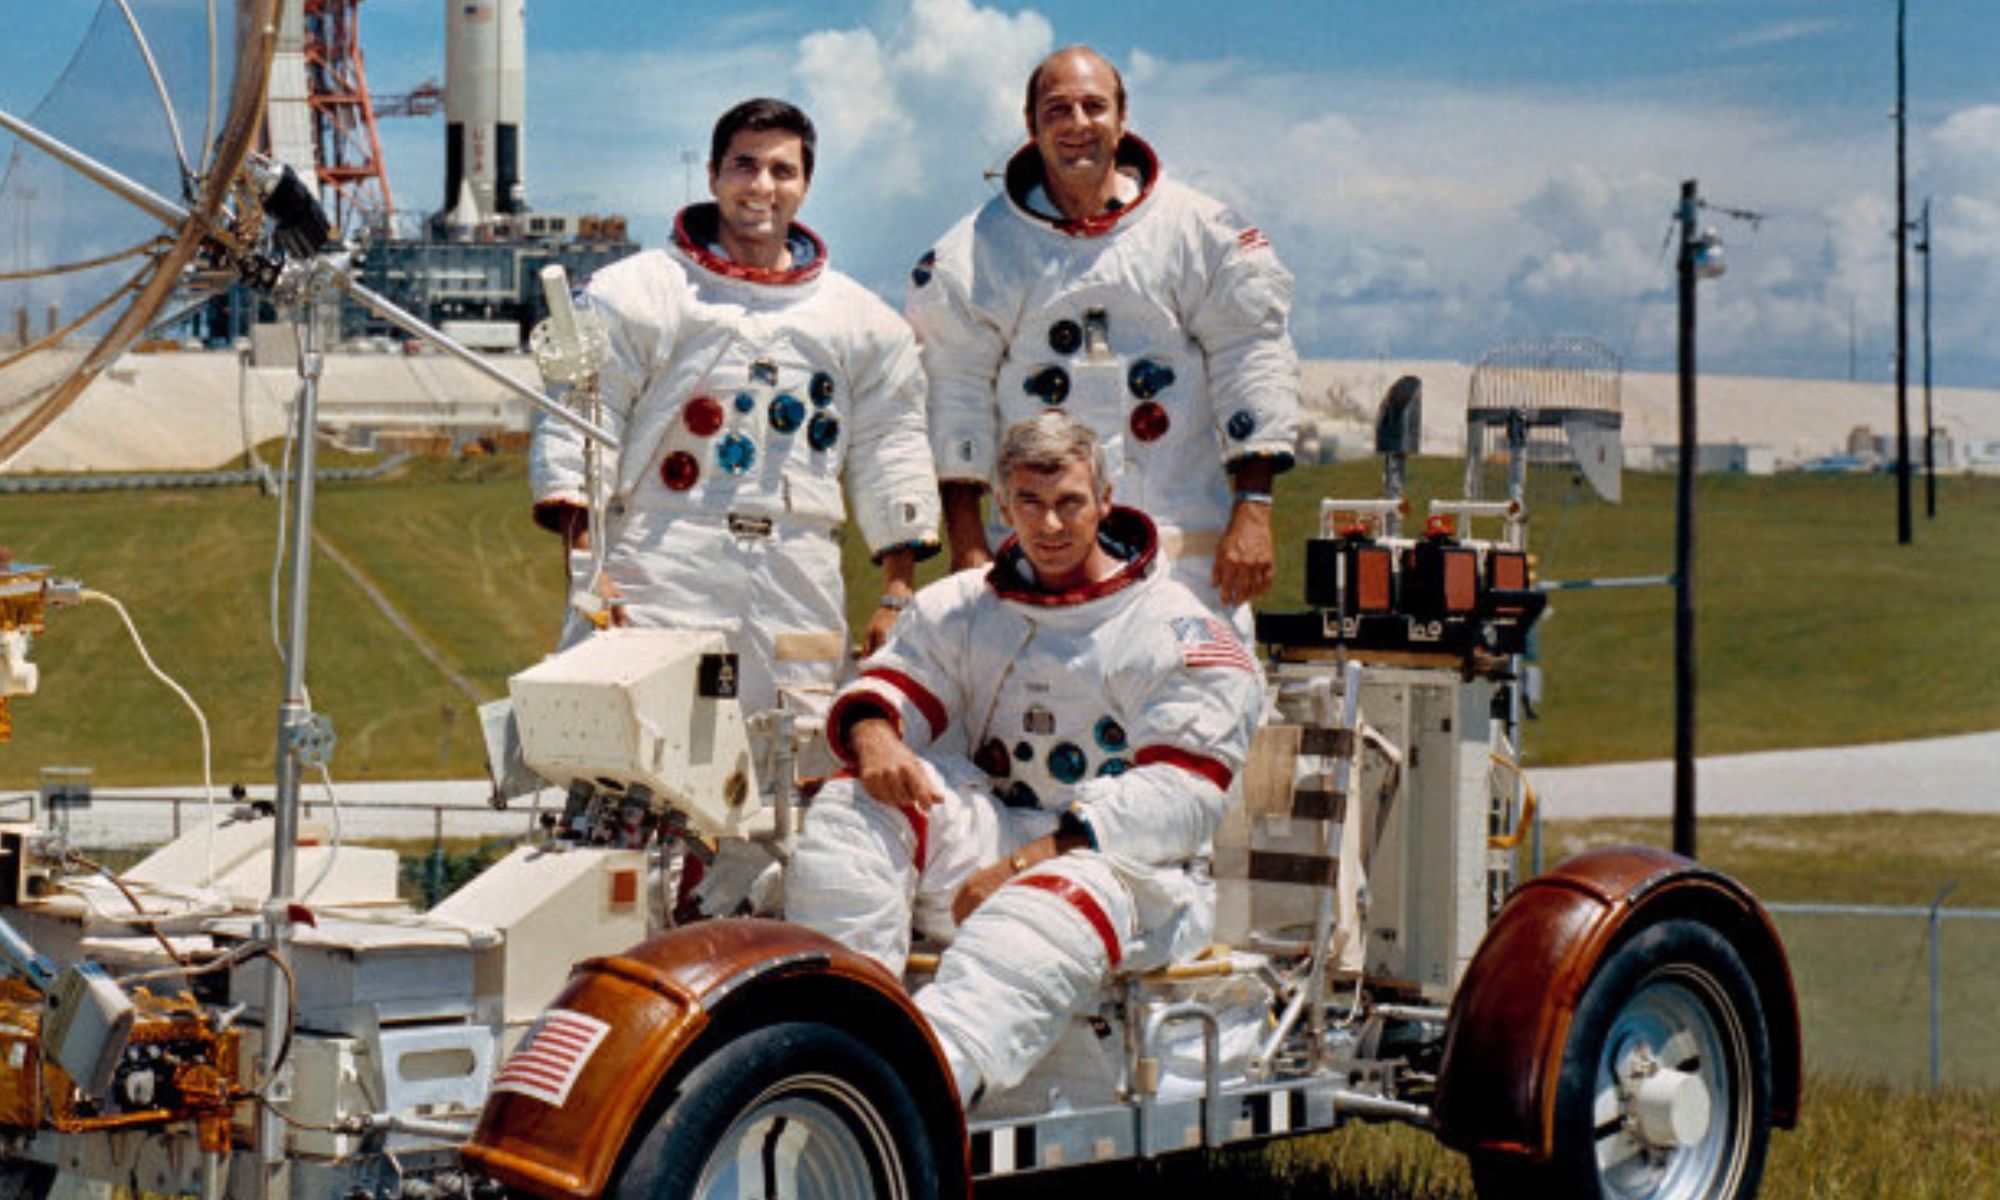 Σαν σήμερα: Απόλλων 17 – Η τελευταία επανδρωμένη αποστολή στη Σελήνη